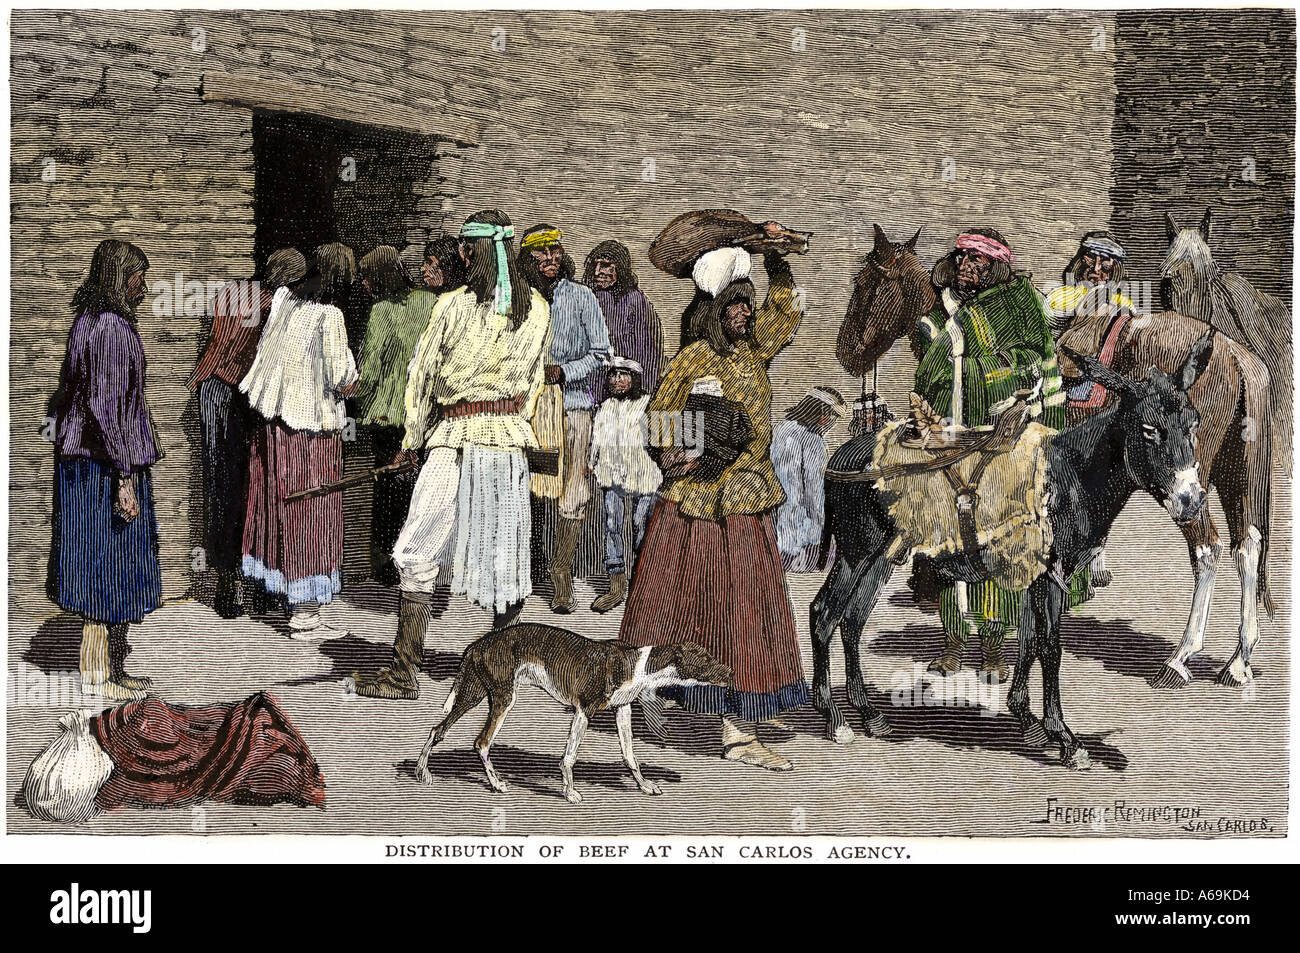 Apache ricevere una razione di carni bovine provenienti da agenti indiano a San Carlos Prenotazione Arizona 1890s. Colorate a mano la xilografia di Frederic Remington illustrazione Foto Stock